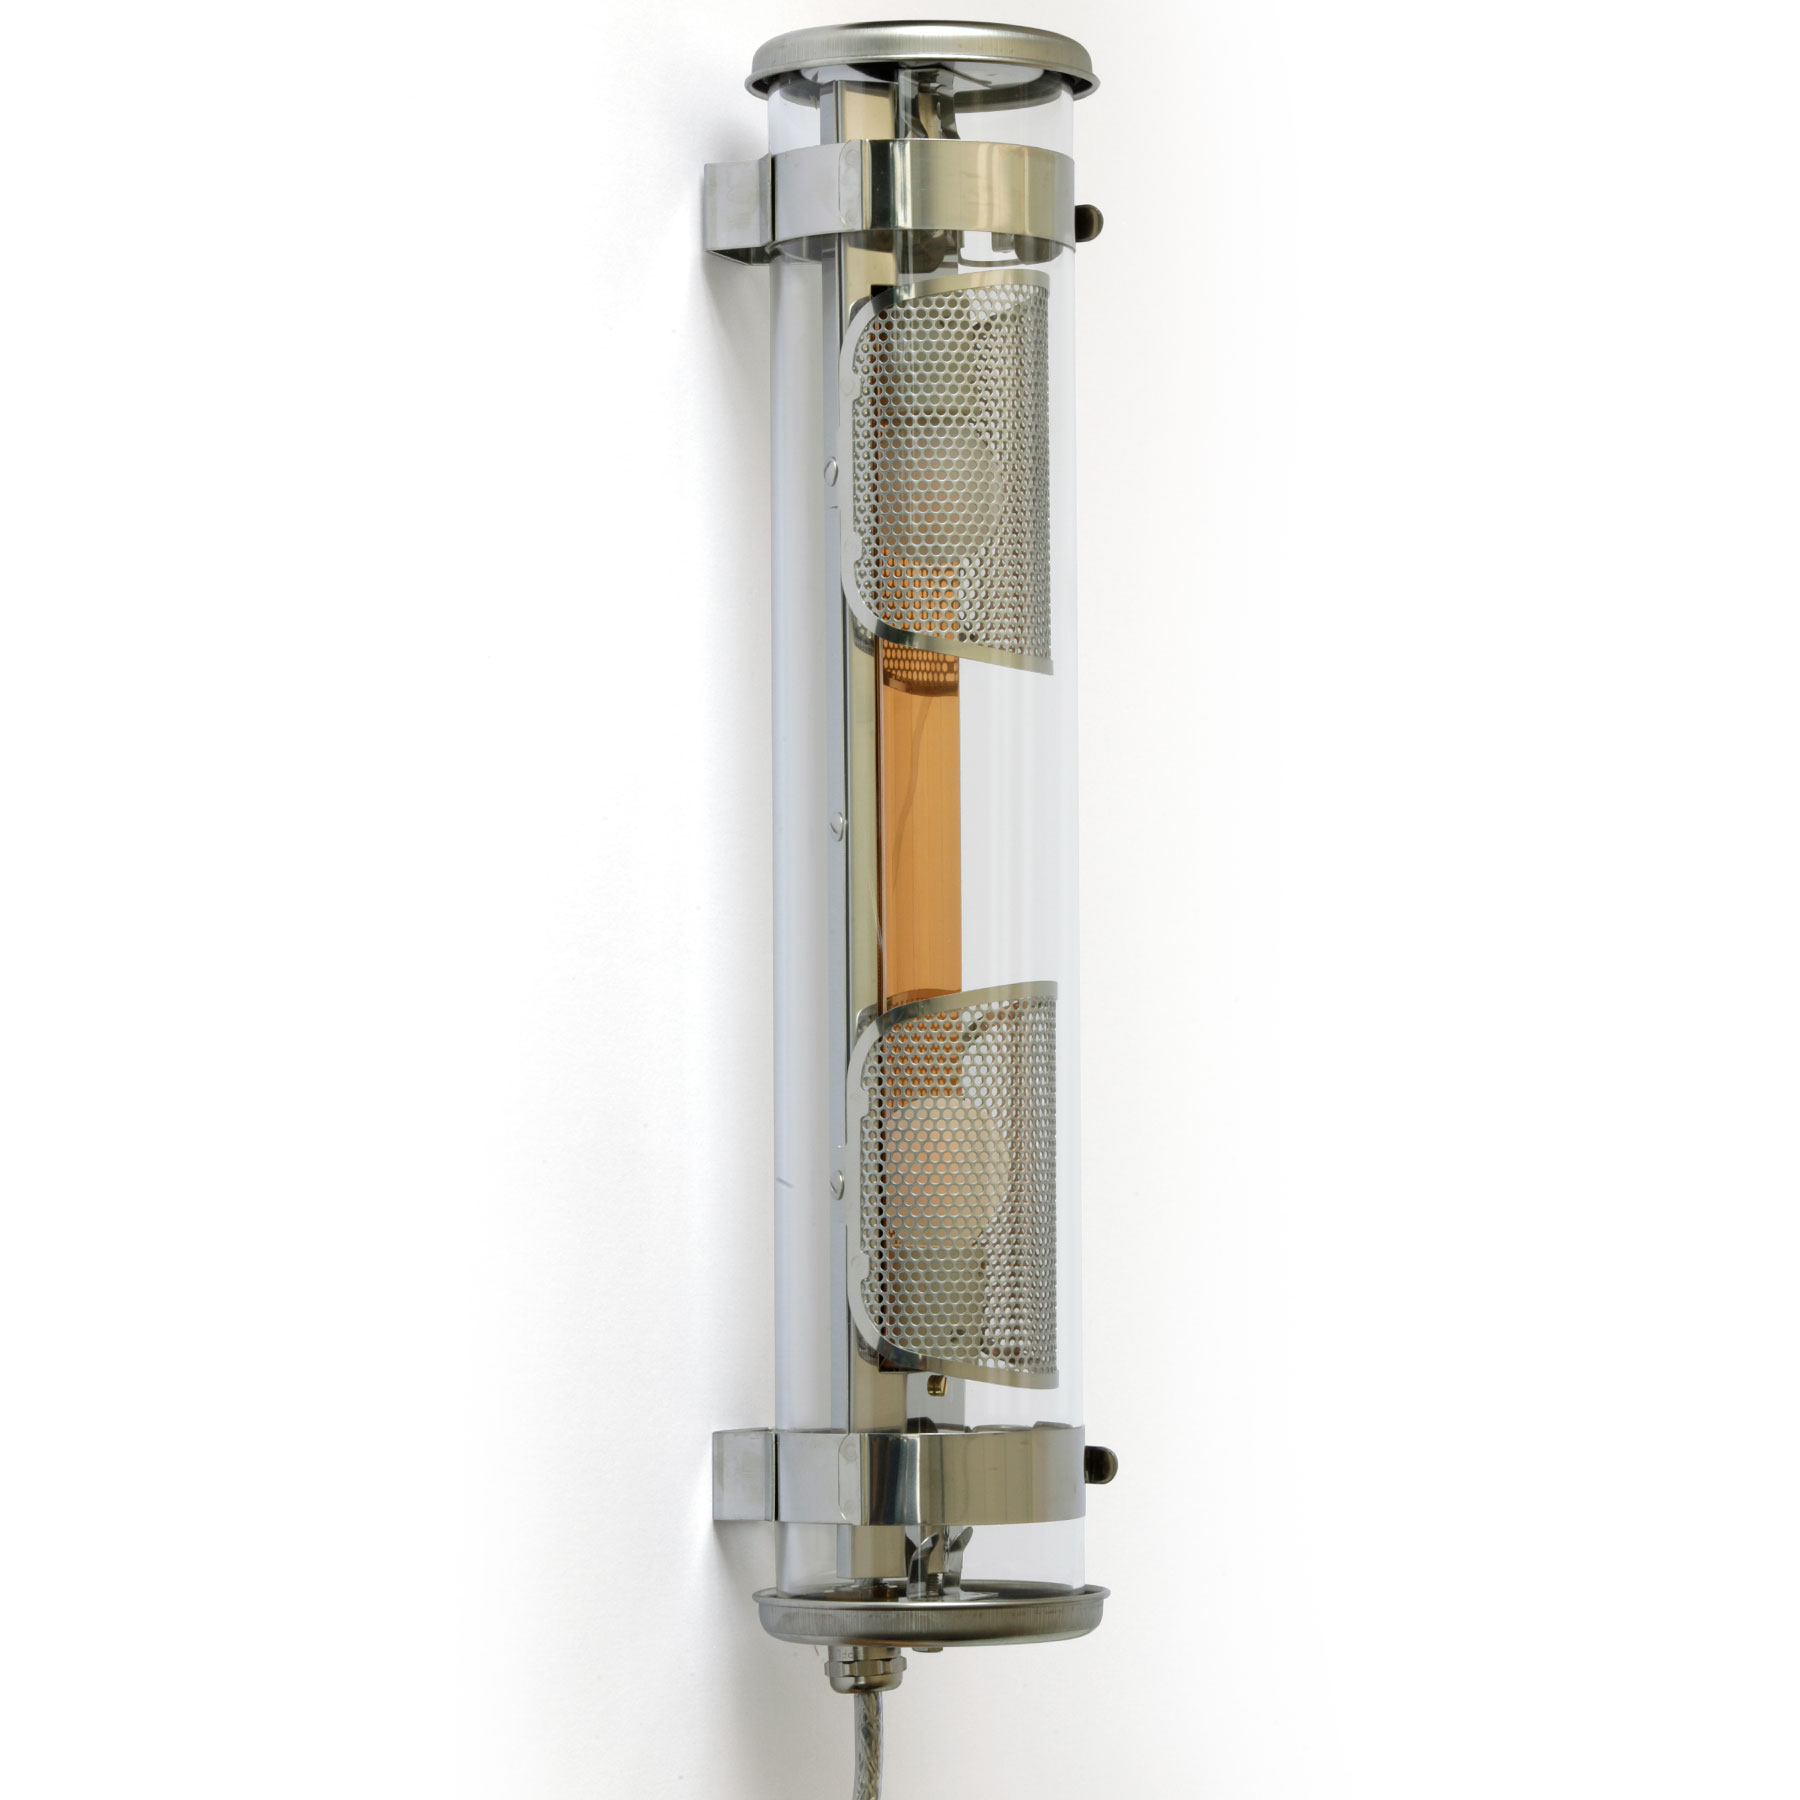 Universell einsetzbare Glasröhren-Leuchte MUSSET mit IP68: Die Glasröhren-Leuchte MUSSET mit Reflektor in Kupfer, mit Gewebe-Abschirmung